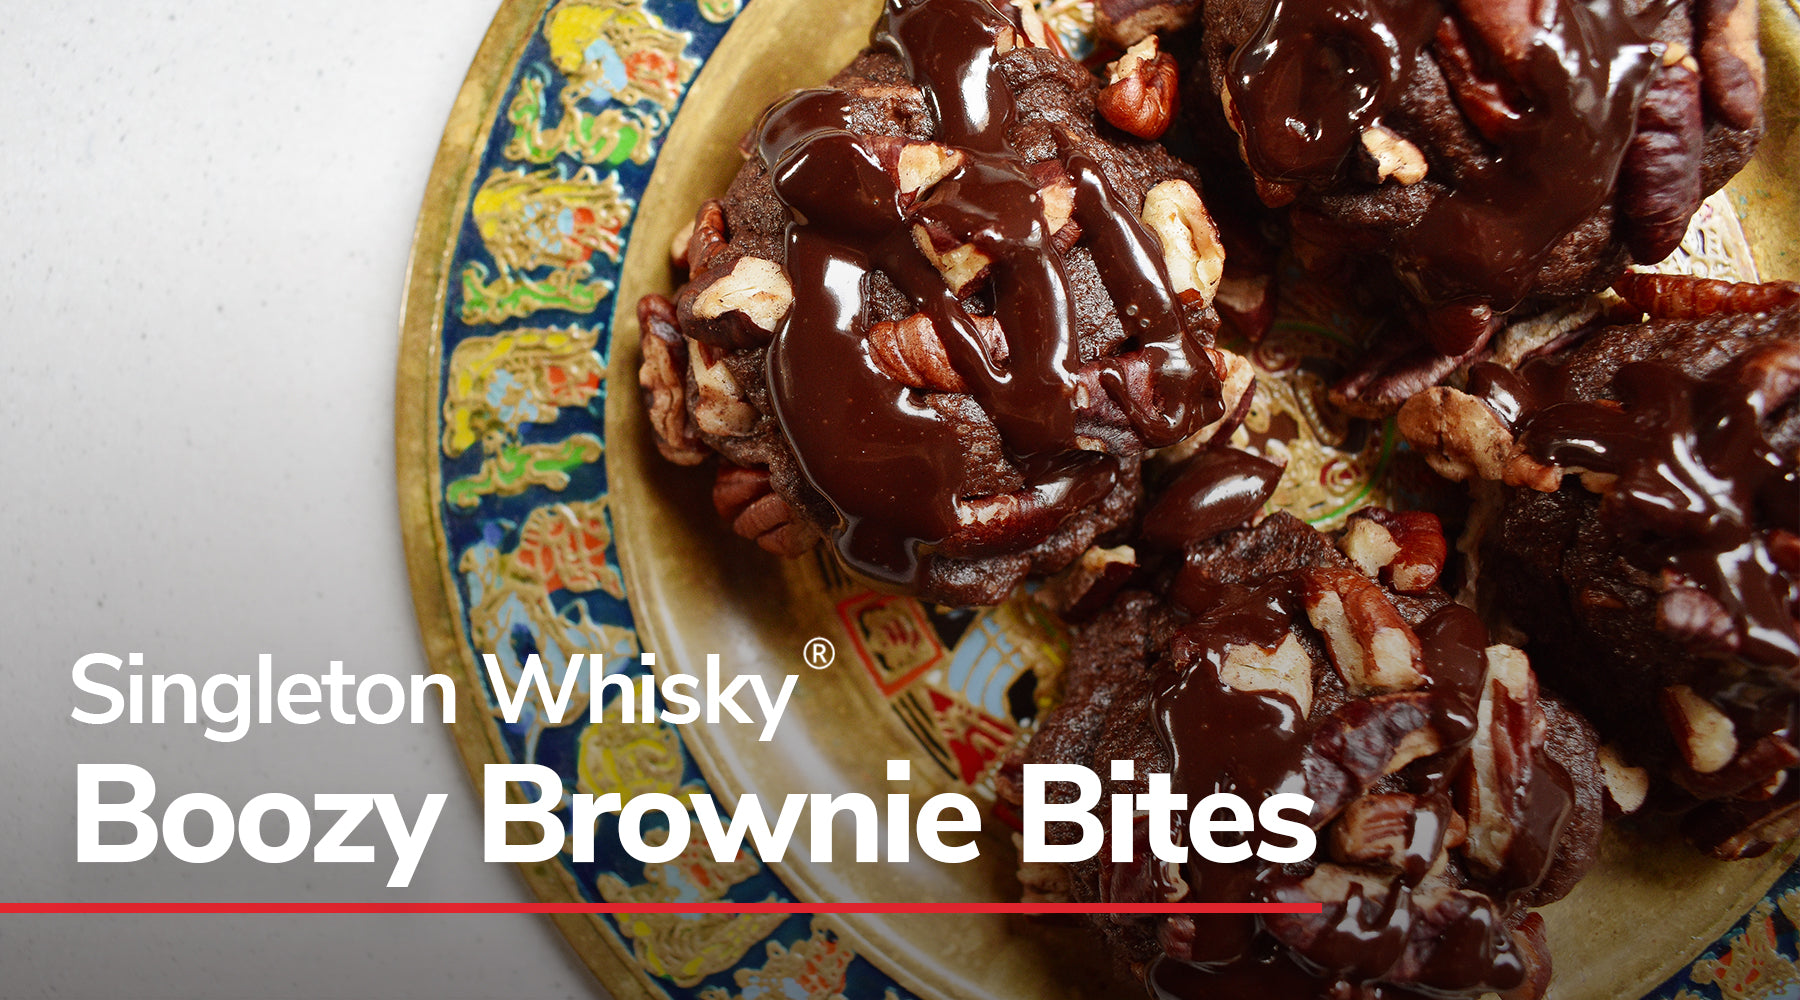 Boozy Brownie Bites with Singleton Whisky